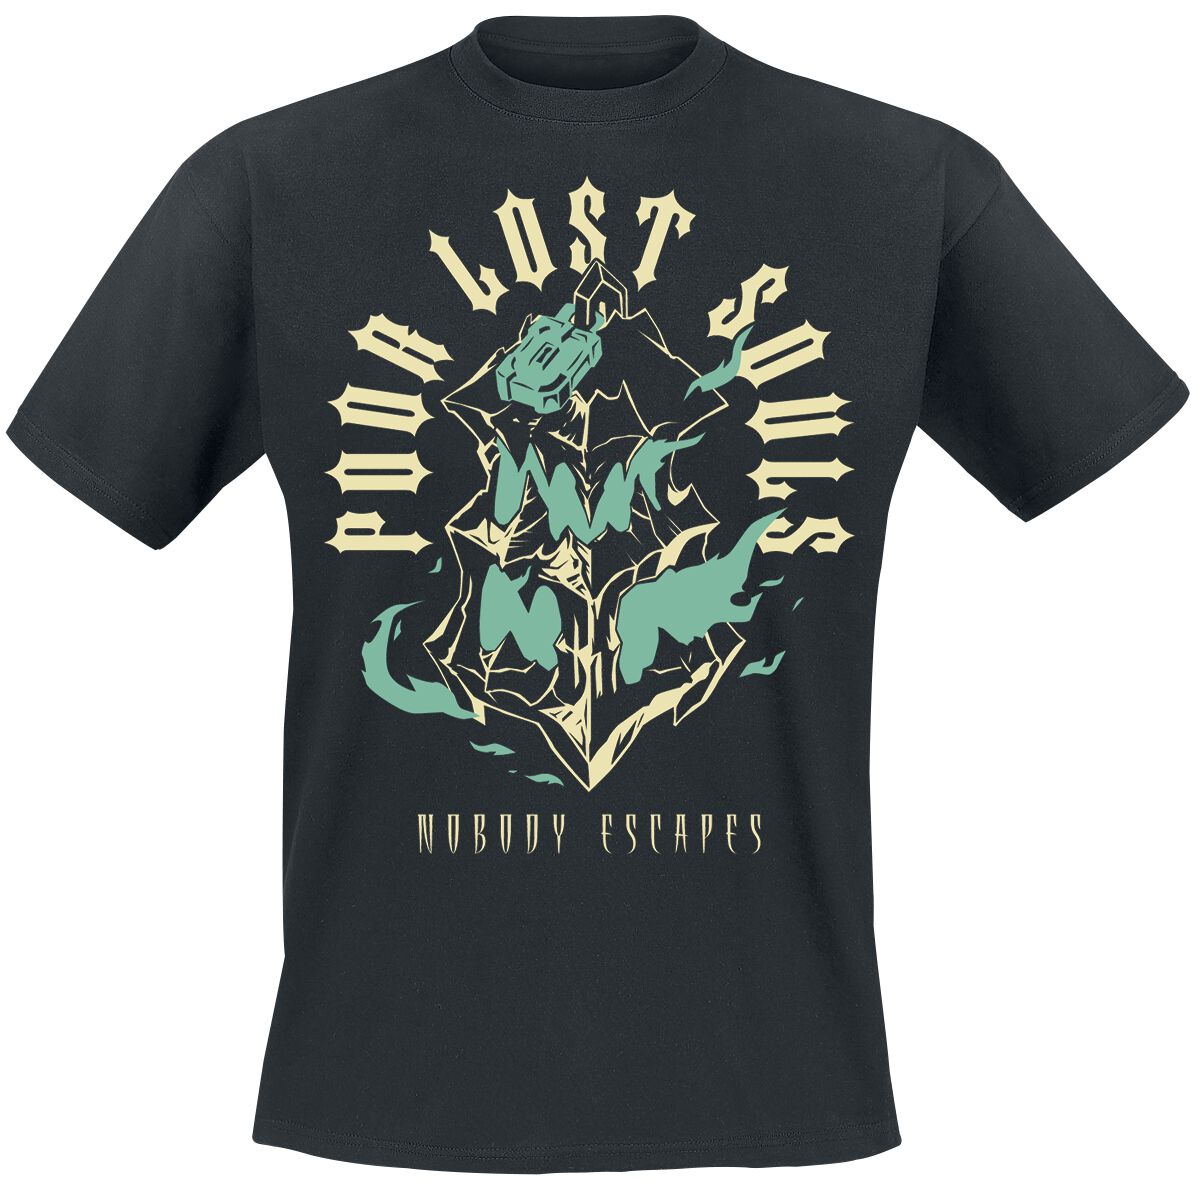 League Of Legends - Gaming T-Shirt - Thresh - Lantern - S bis M - für Männer - Größe S - schwarz  - EMP exklusives Merchandise!